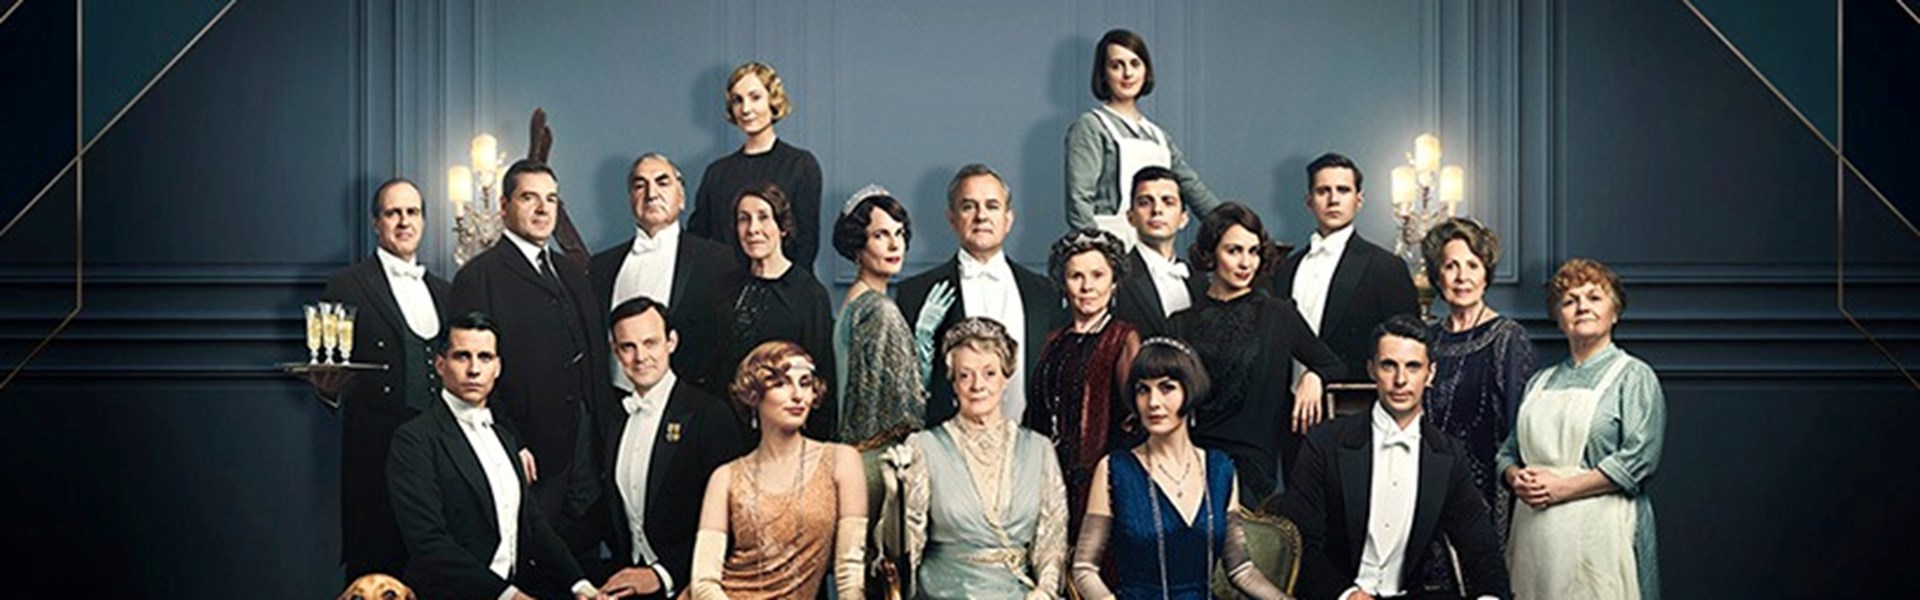 FILM: Downton Abbey (Dementia Friendly Screening)